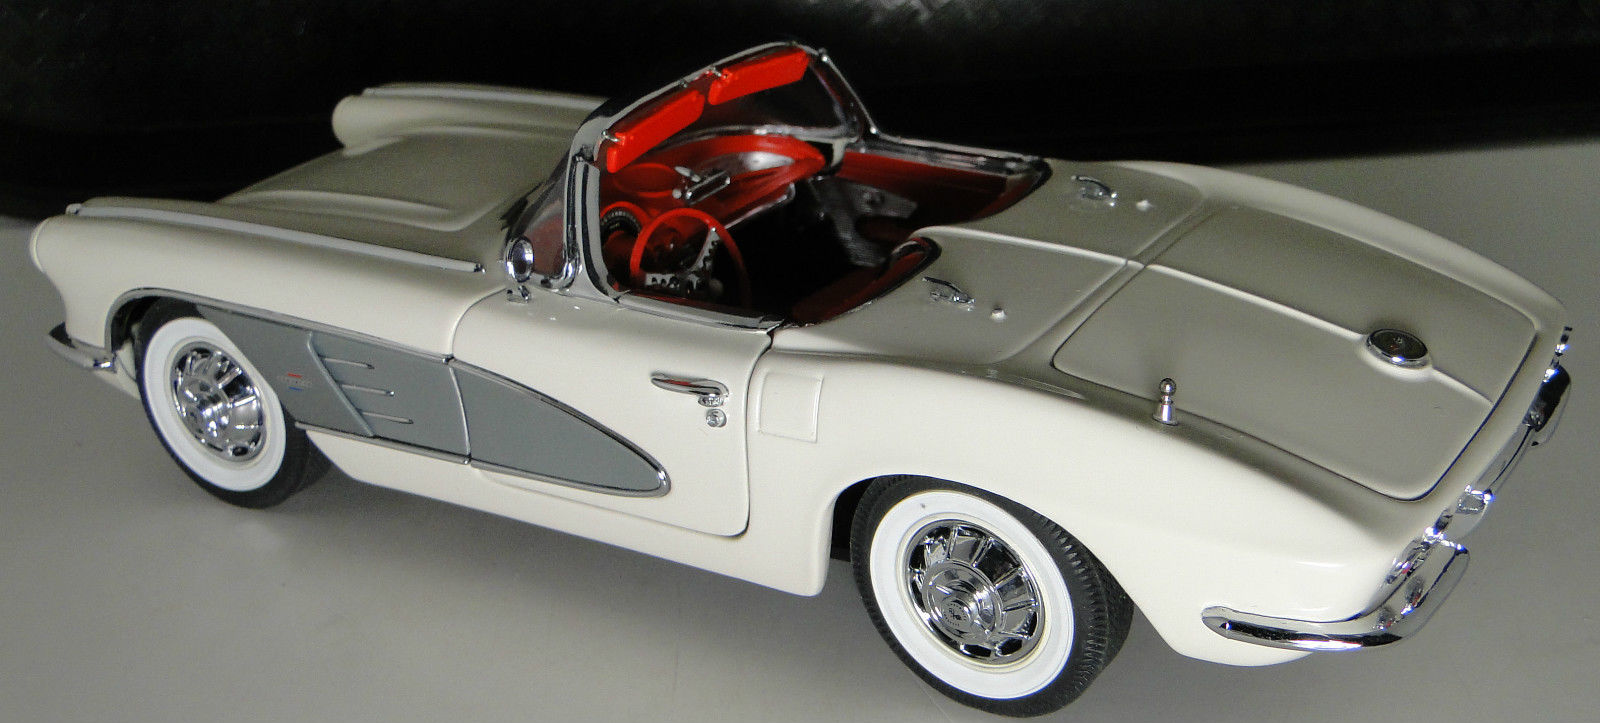 Maquettes de voitures vintages : Notre Top 5 des modèles les plus chers !